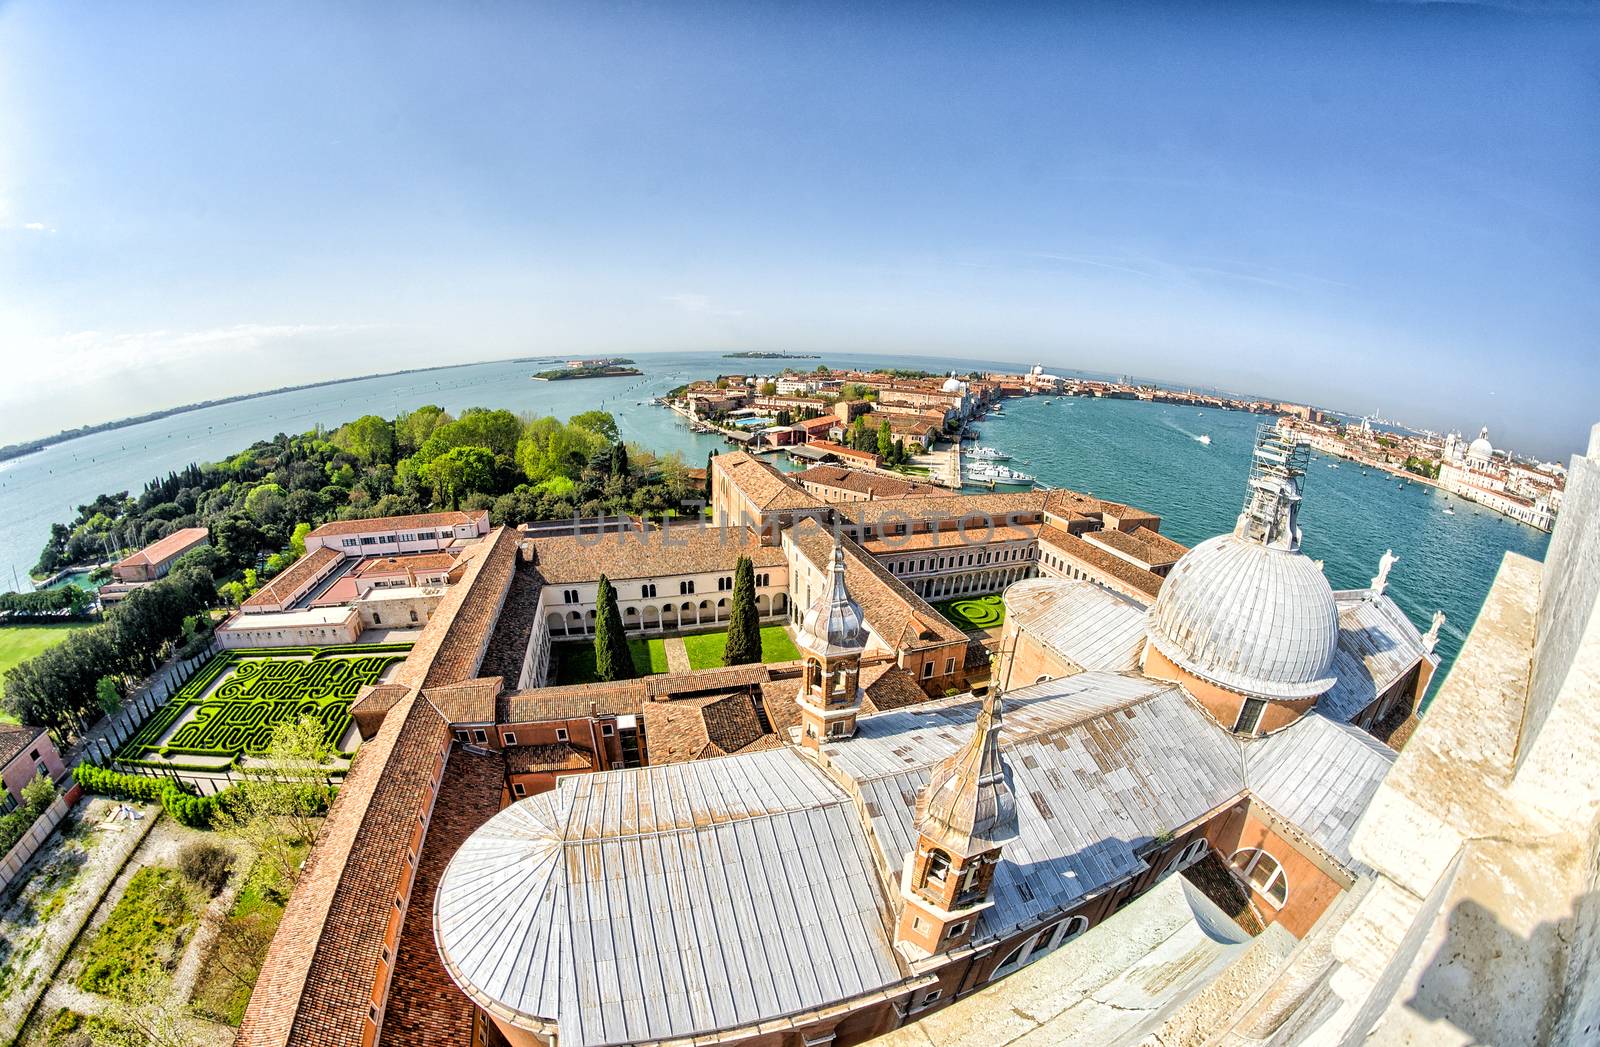 View of Venice from Basilica Santa Maria della Salute.